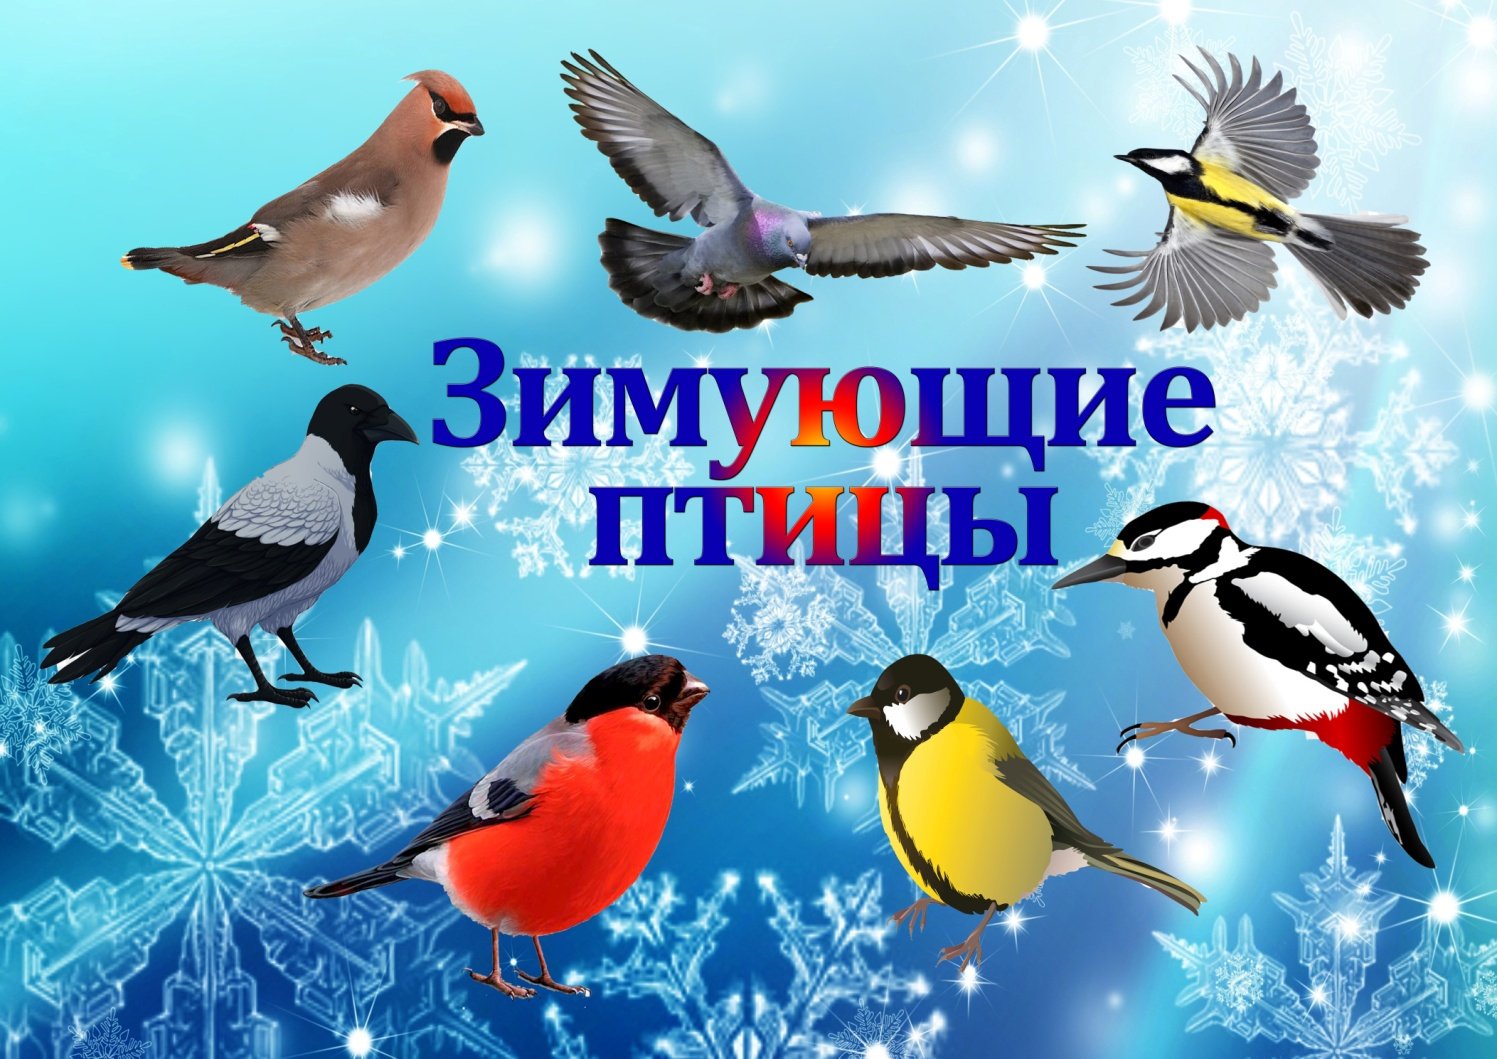 Зимующие птицы России